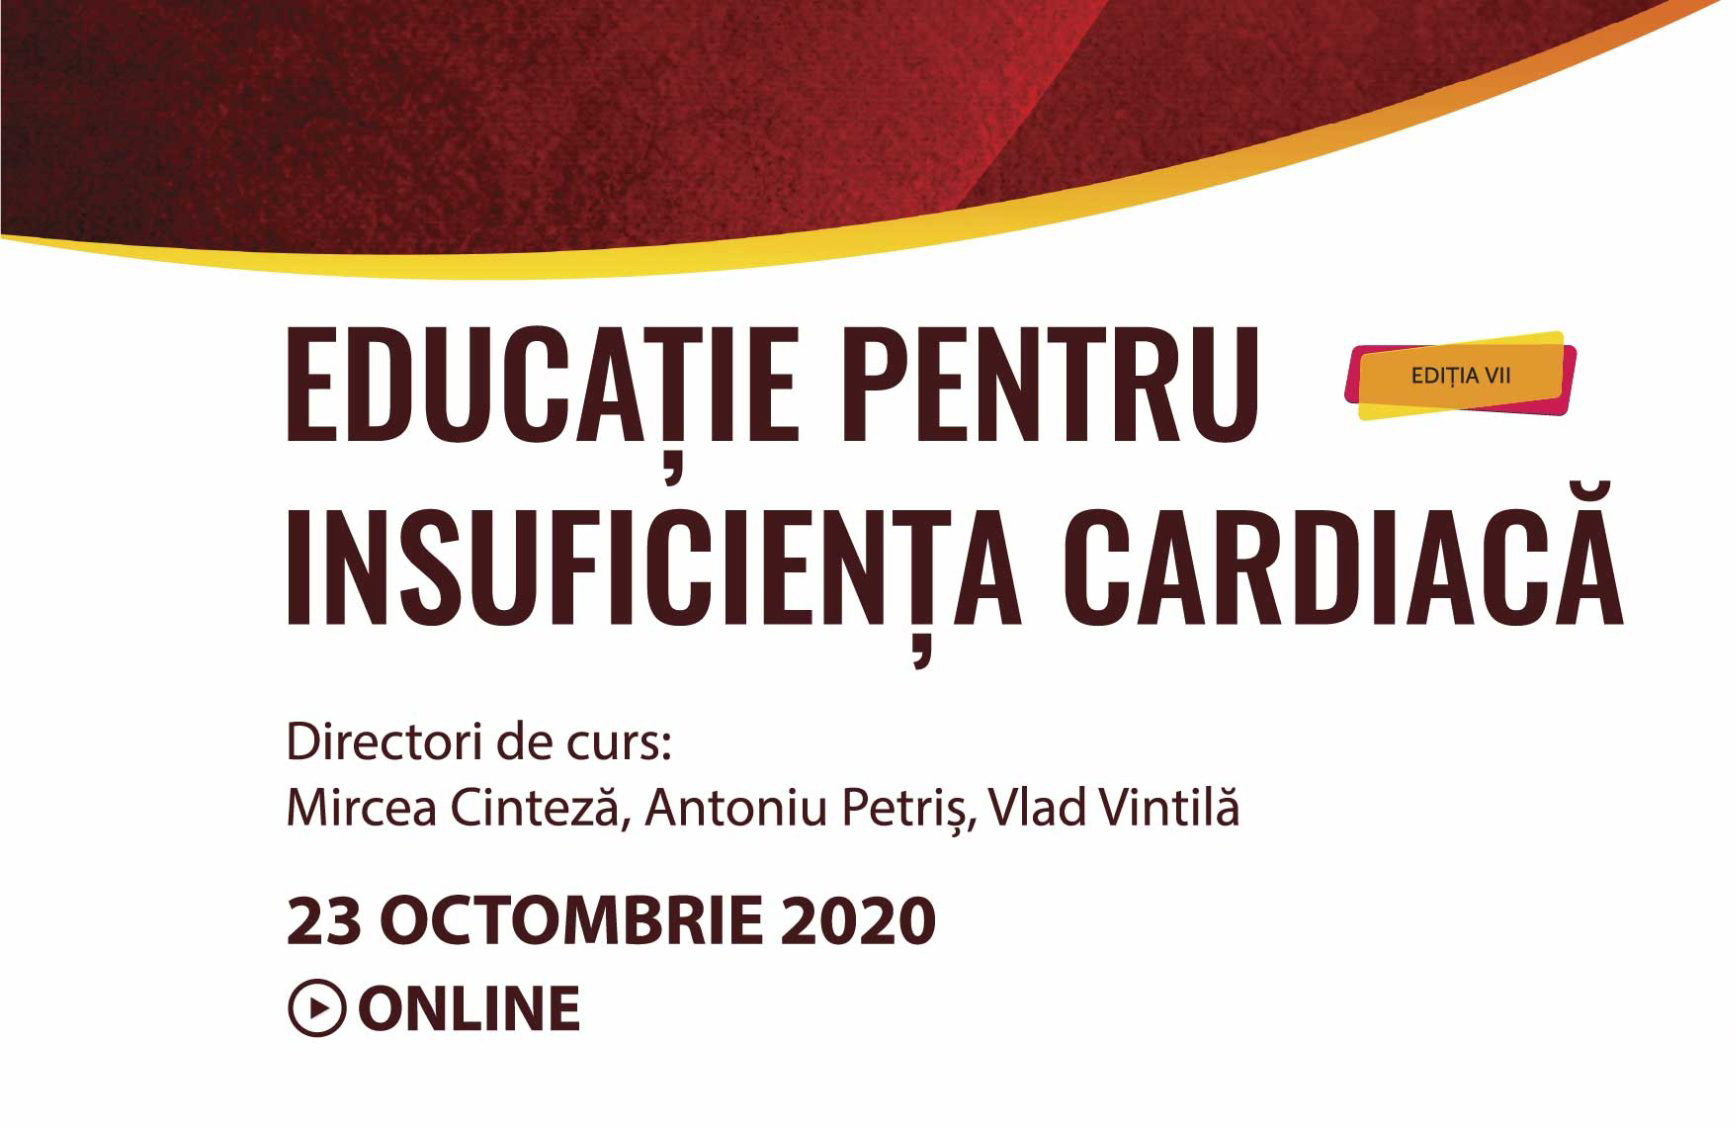 Cursul EPIC VII – Educație Pentru Insuficiența Cardiacă are loc online, pe 23 octombrie